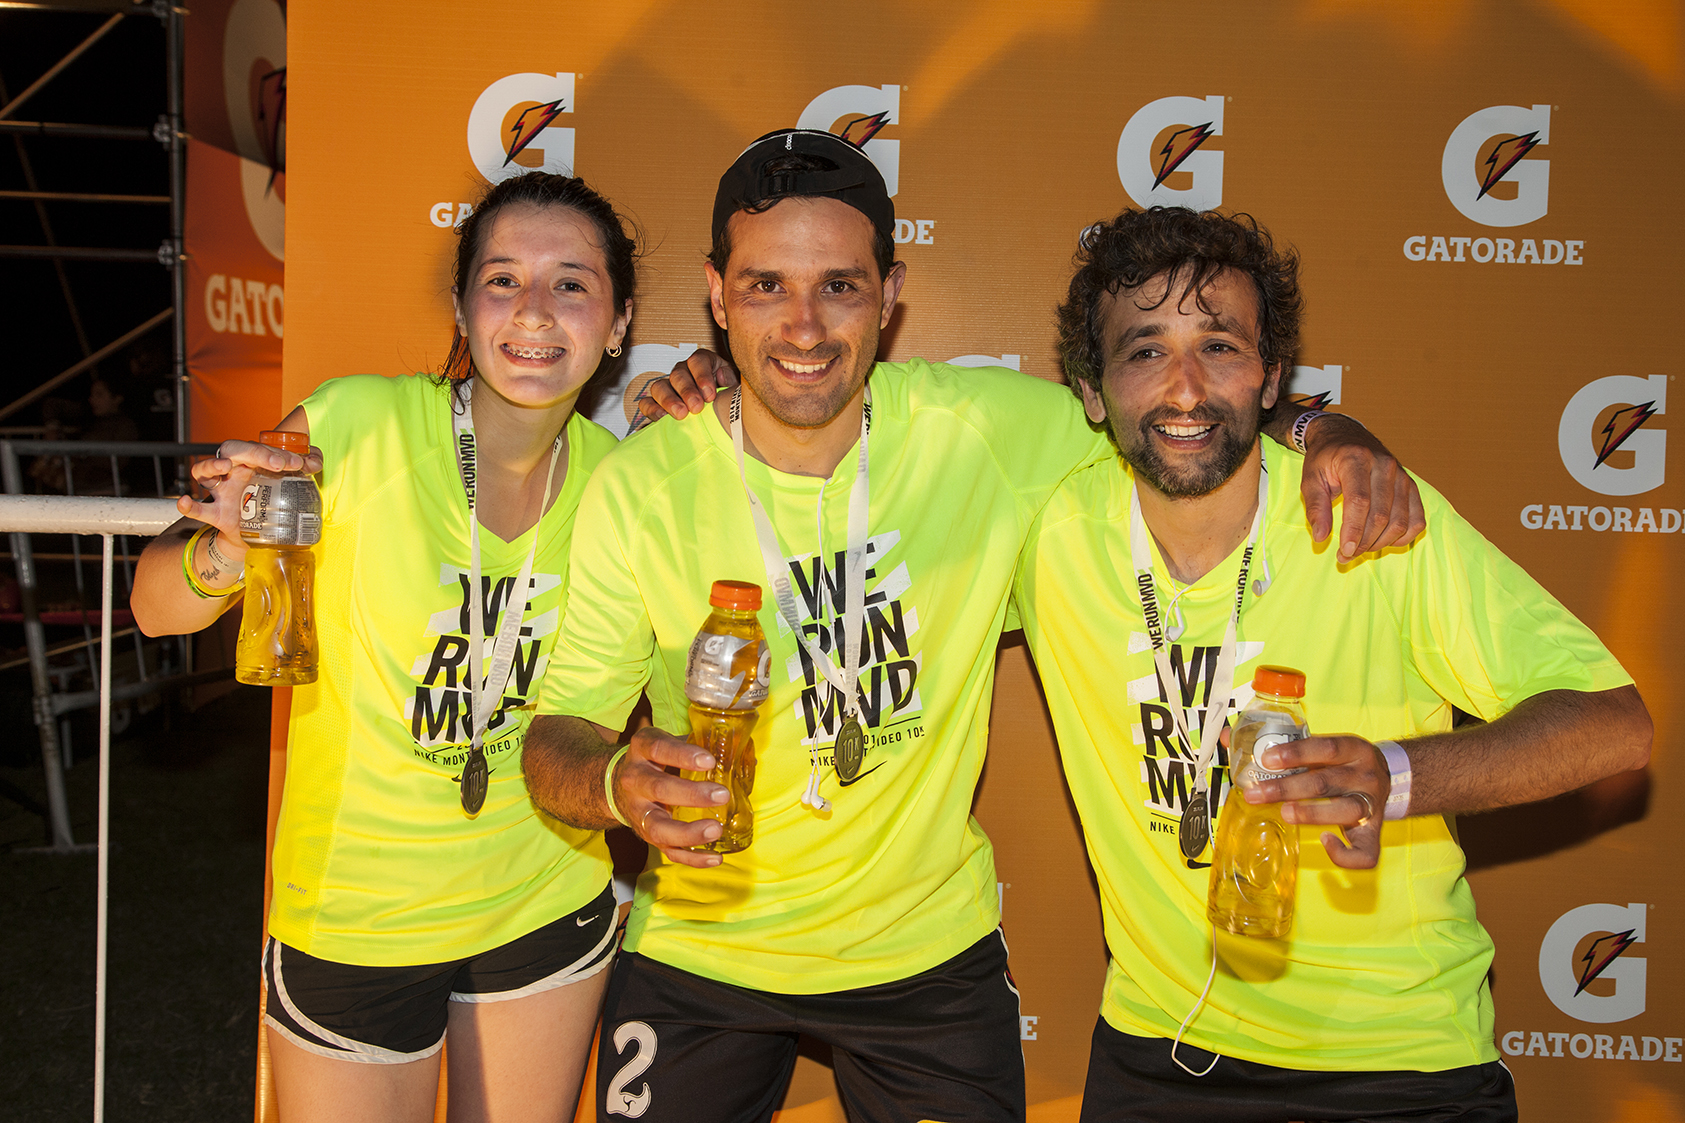 Gatorade hidrató la 10k de Nike en Uruguay